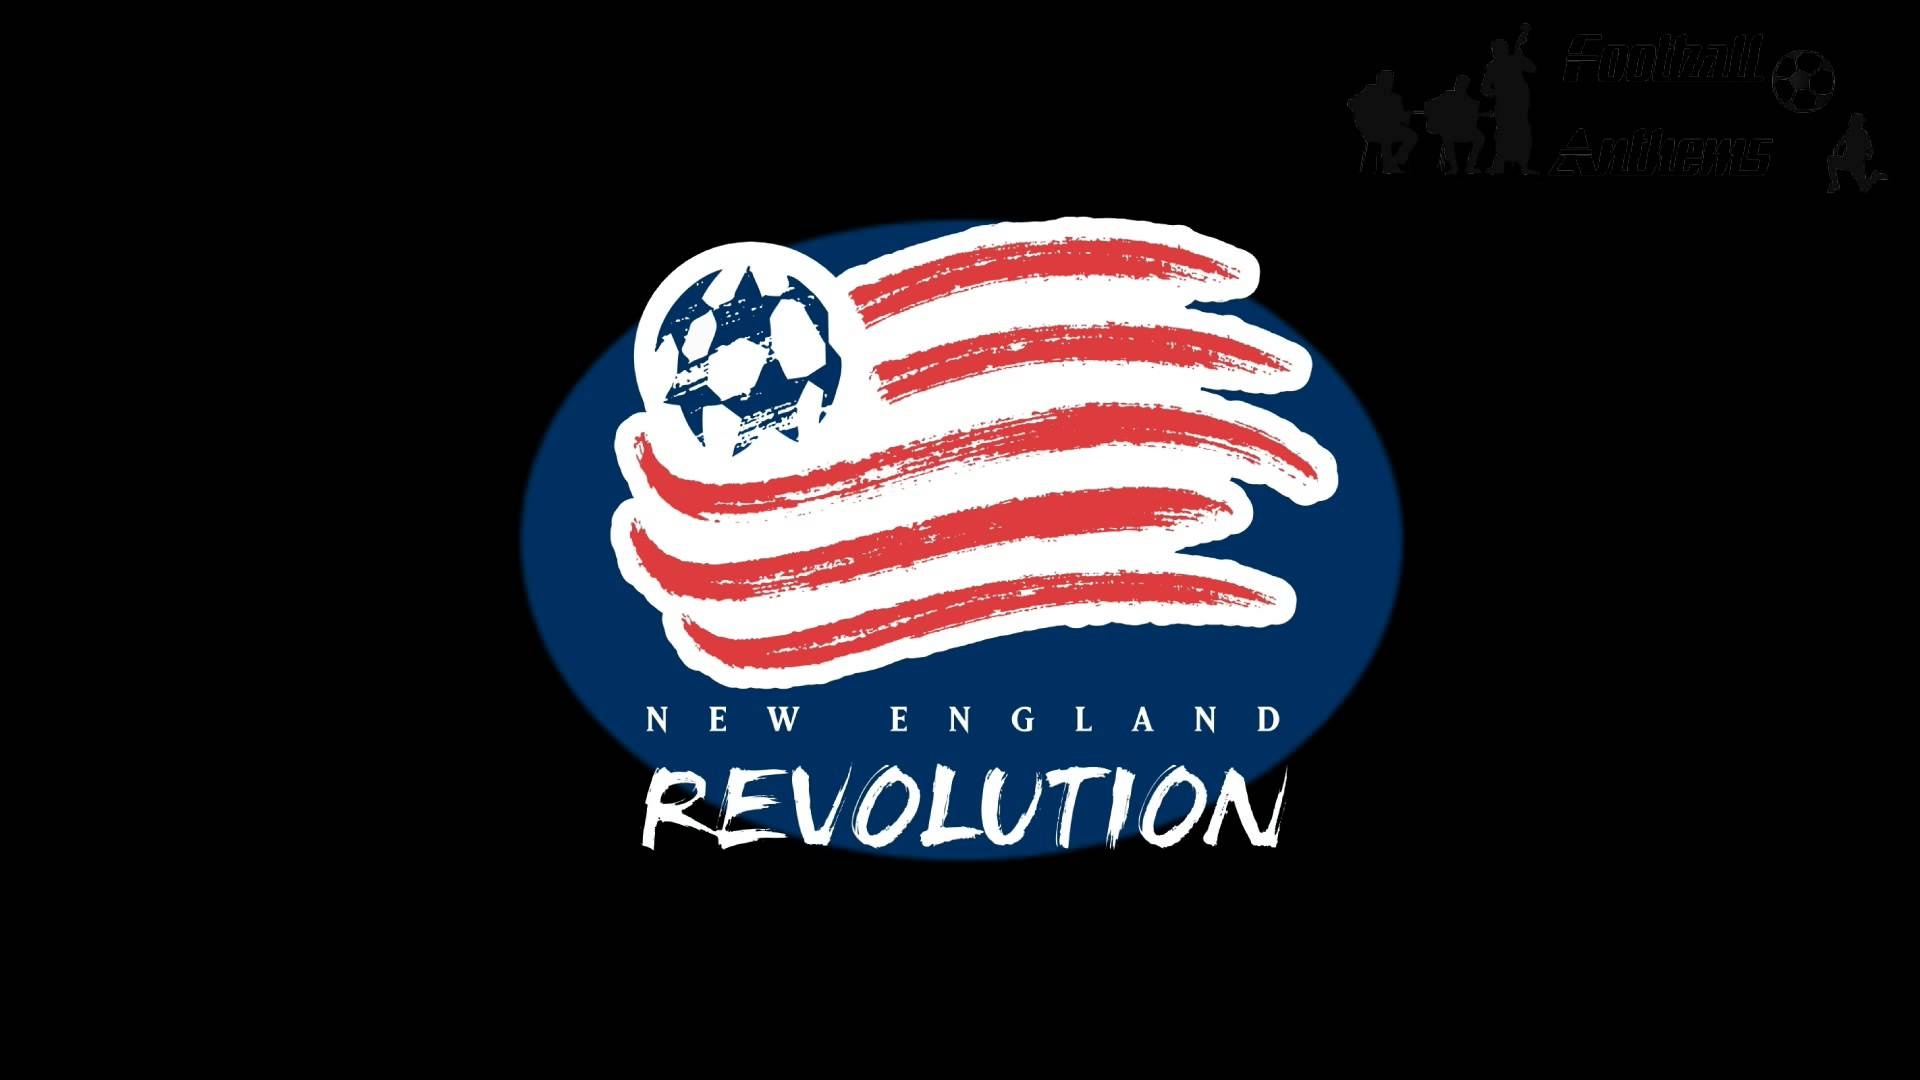 New England Revolution, MLS soccer pride, Sports wallpaper, Team spirit, 1920x1080 Full HD Desktop